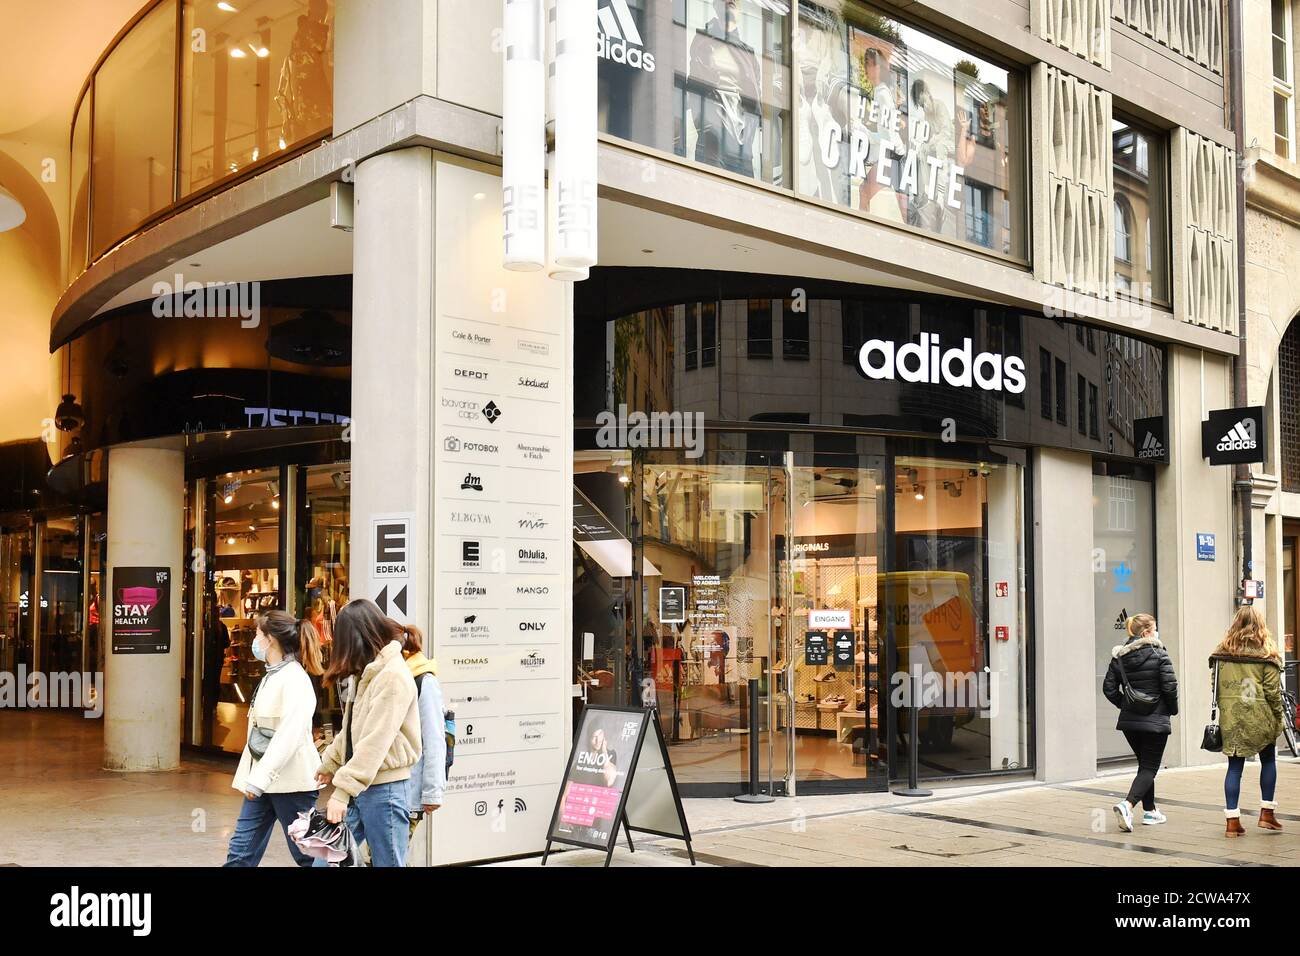 Außenansicht eines adidas Stores, Flagship Store in der Sendlinger Straße  in München, Sportartikelhersteller, weltweit im Einsatz Stockfotografie -  Alamy